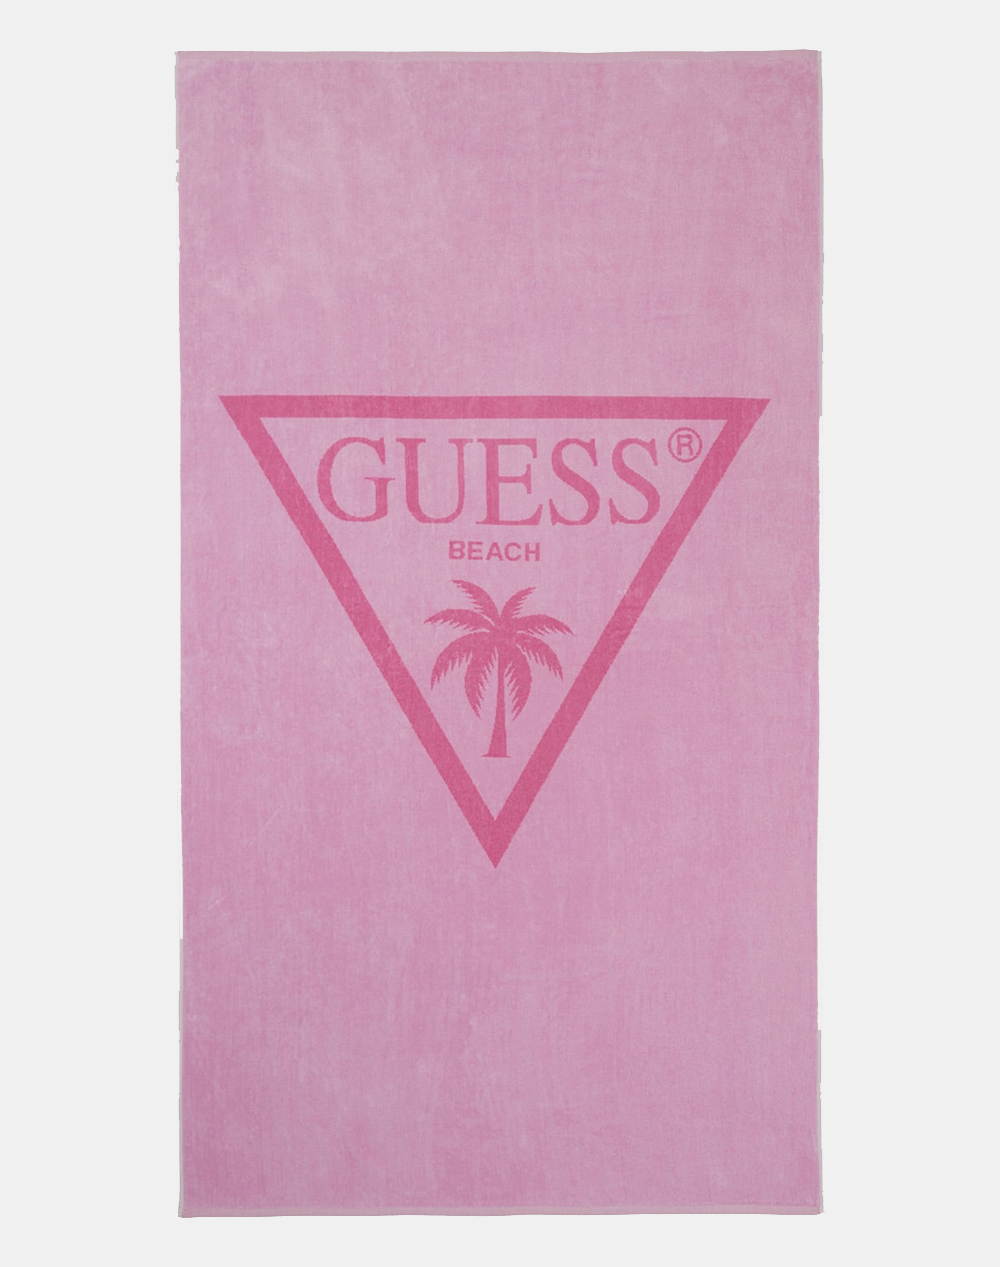 GUESS TOWEL BEACH TRIANGLE ACCESORIU UNISEX (Dimensiuni: 180 x 100 cm.)